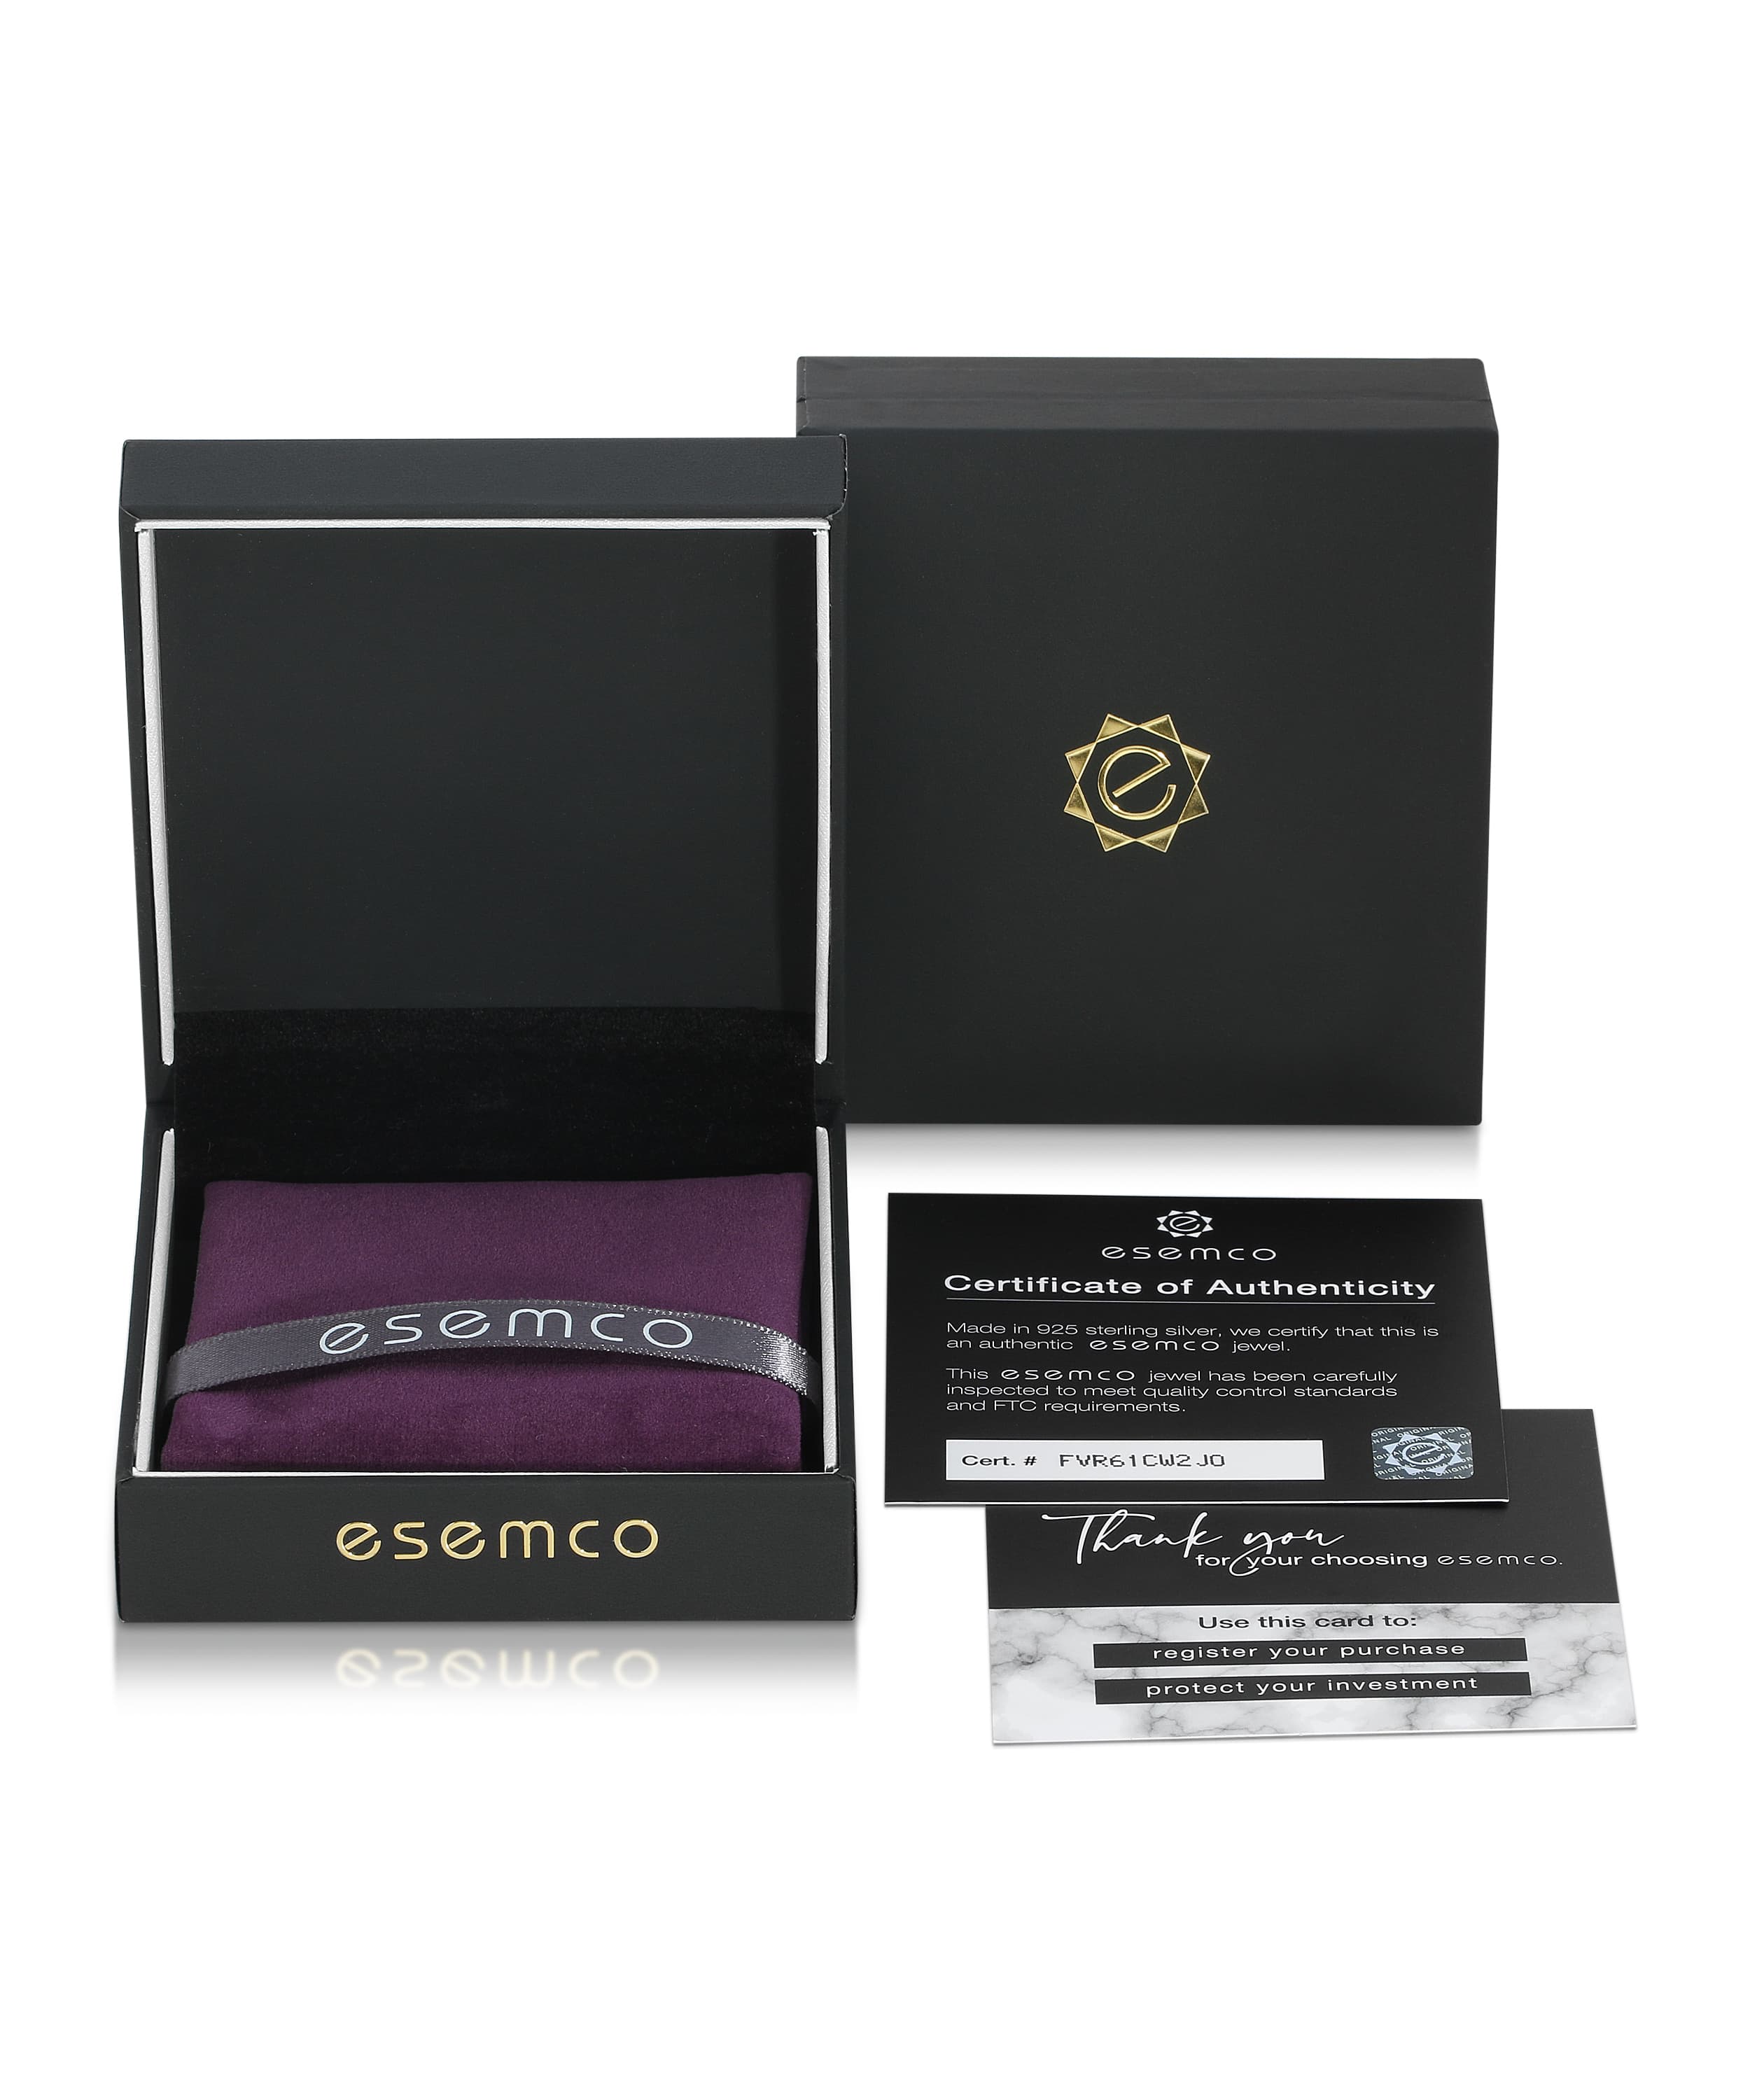 ESEMCO Diamond 18k White Gold Letter S Initial Open Ring View 4